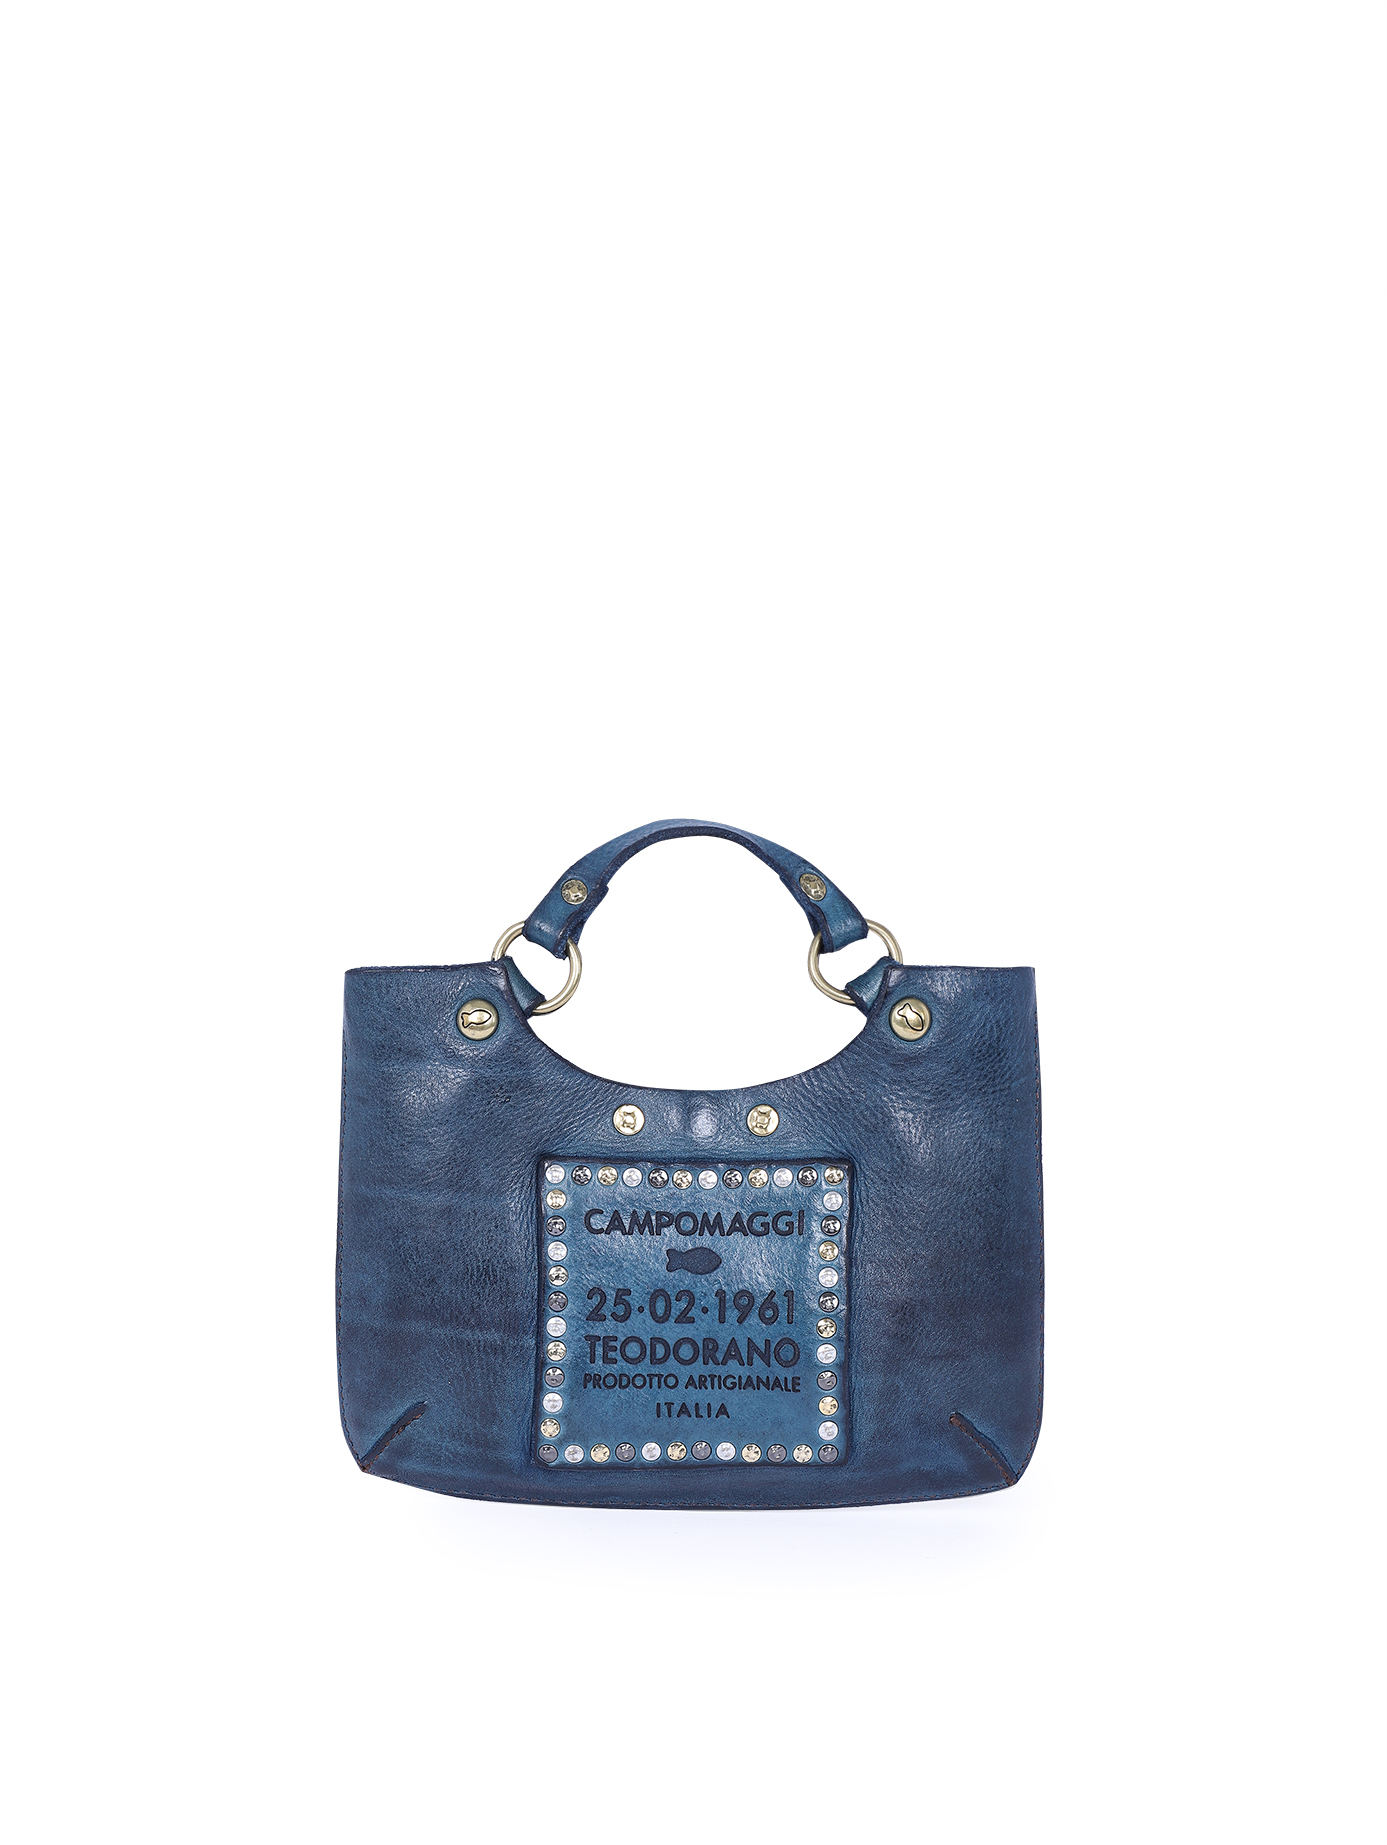 Мини - сумочка со съемным плечевым ремнем синего цвета